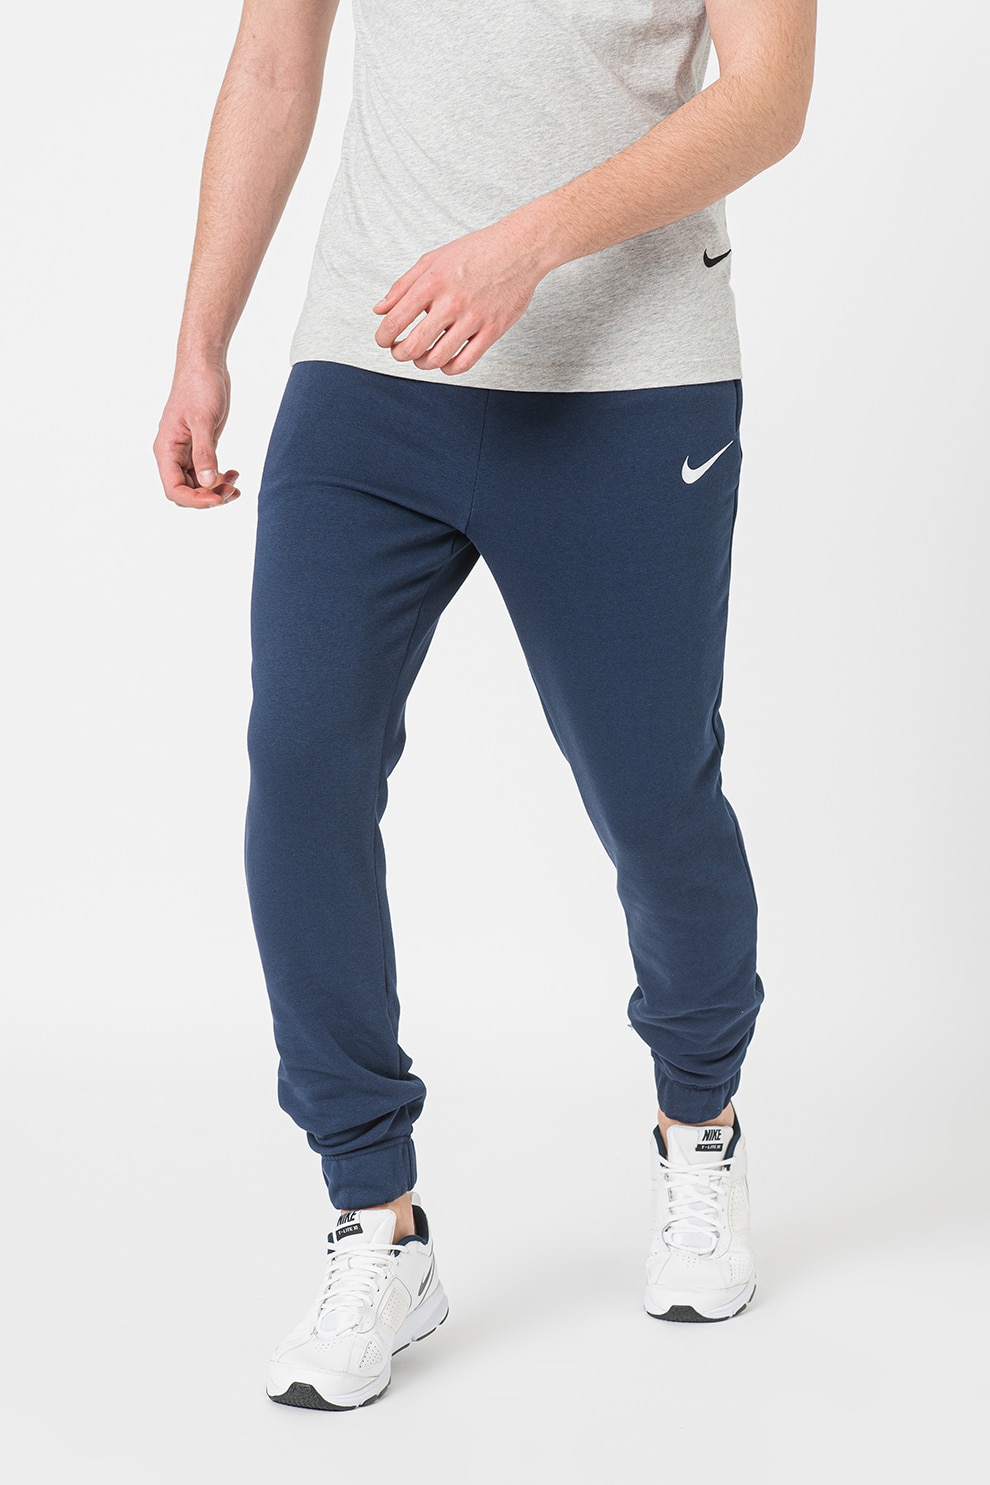 Monotonous Guess bid Nike, Pantaloni cu buzunare laterale, pentru fotbal - eMAG.ro